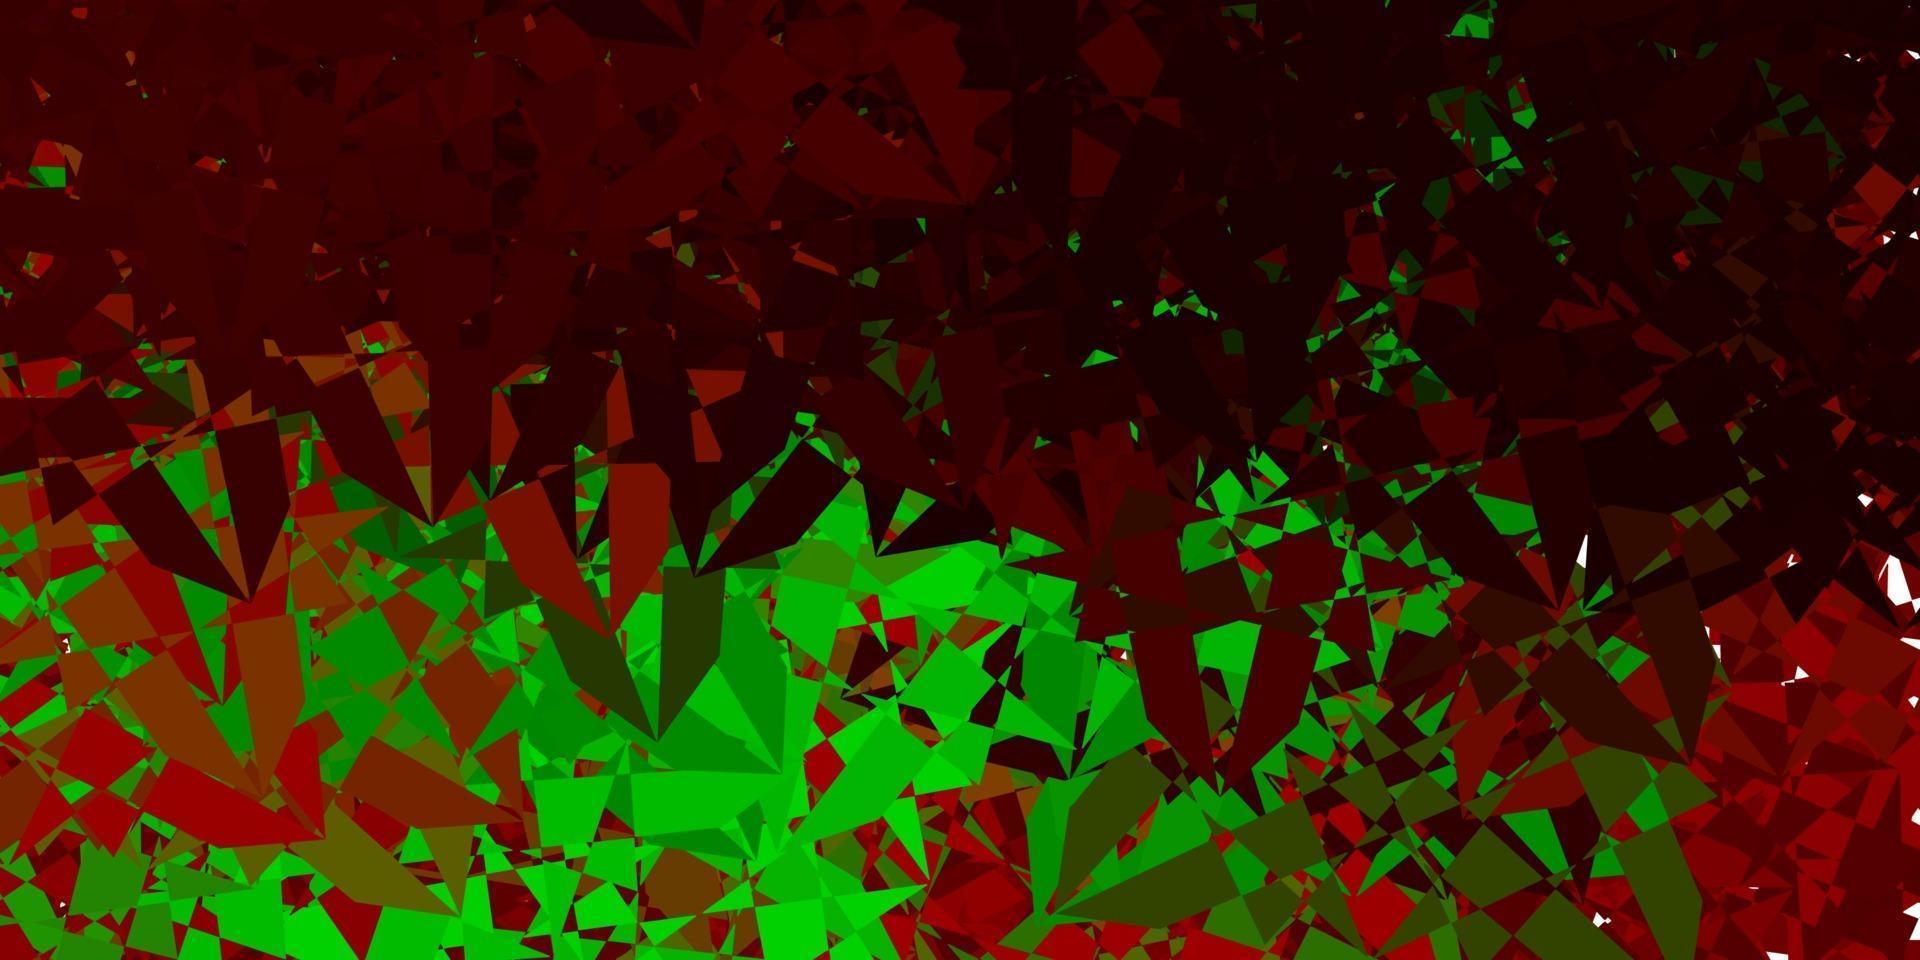 ljusgrön, röd vektorstruktur med slumpmässiga trianglar. vektor